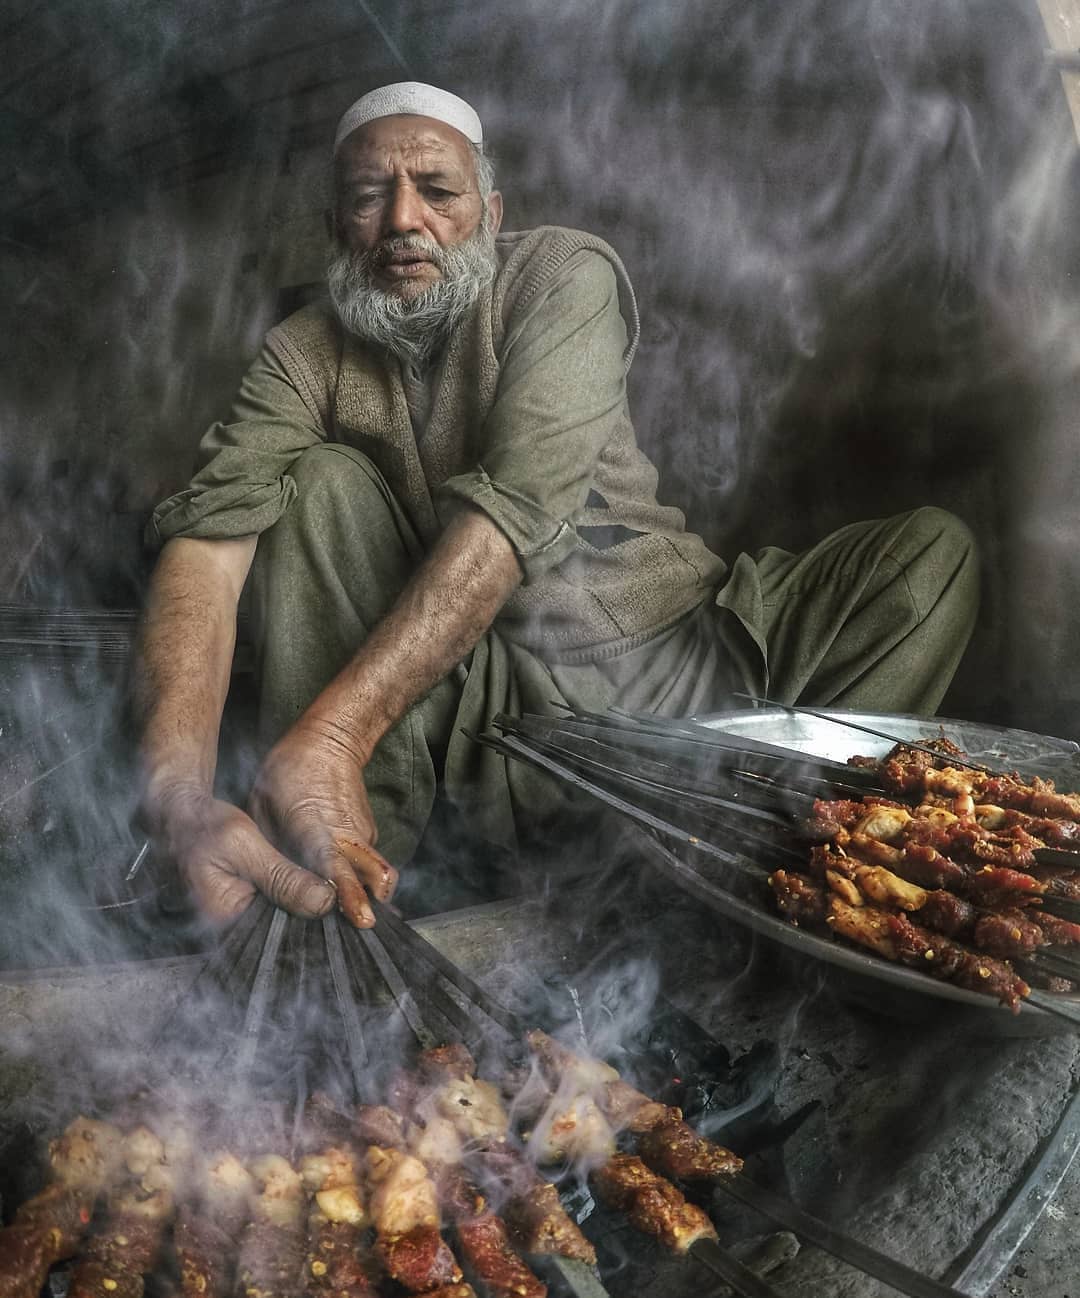 烤羊肉串的人来自摄影师ehtishamahmadfarooqi